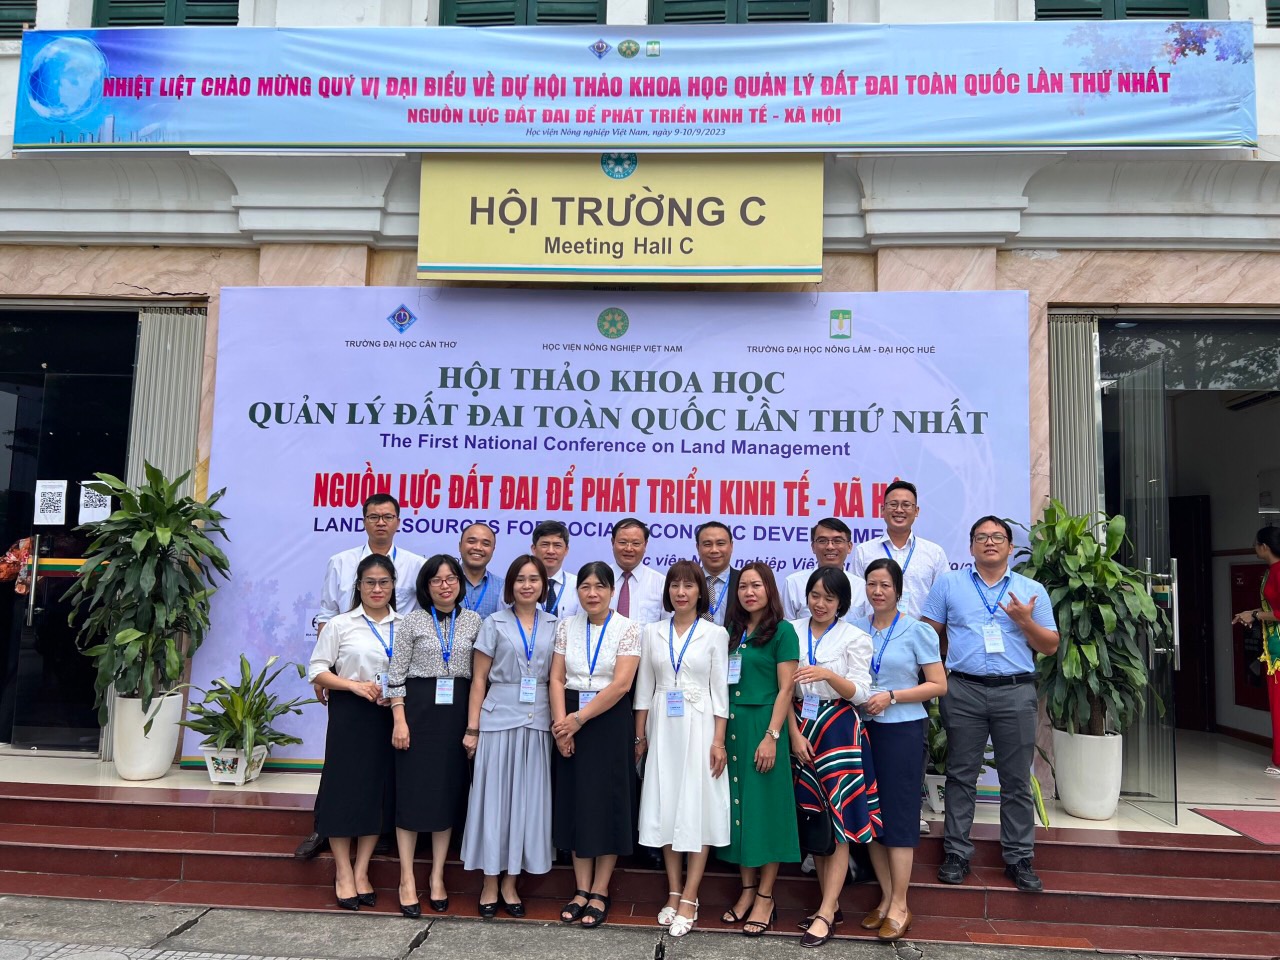 Đoàn tham dự hội thảo của Trường Đại học Nông Lâm, Đại học Huế chụp ảnh lưu niệm cùng Thứ trưởng Bộ TN&MT Lê Minh Ngân